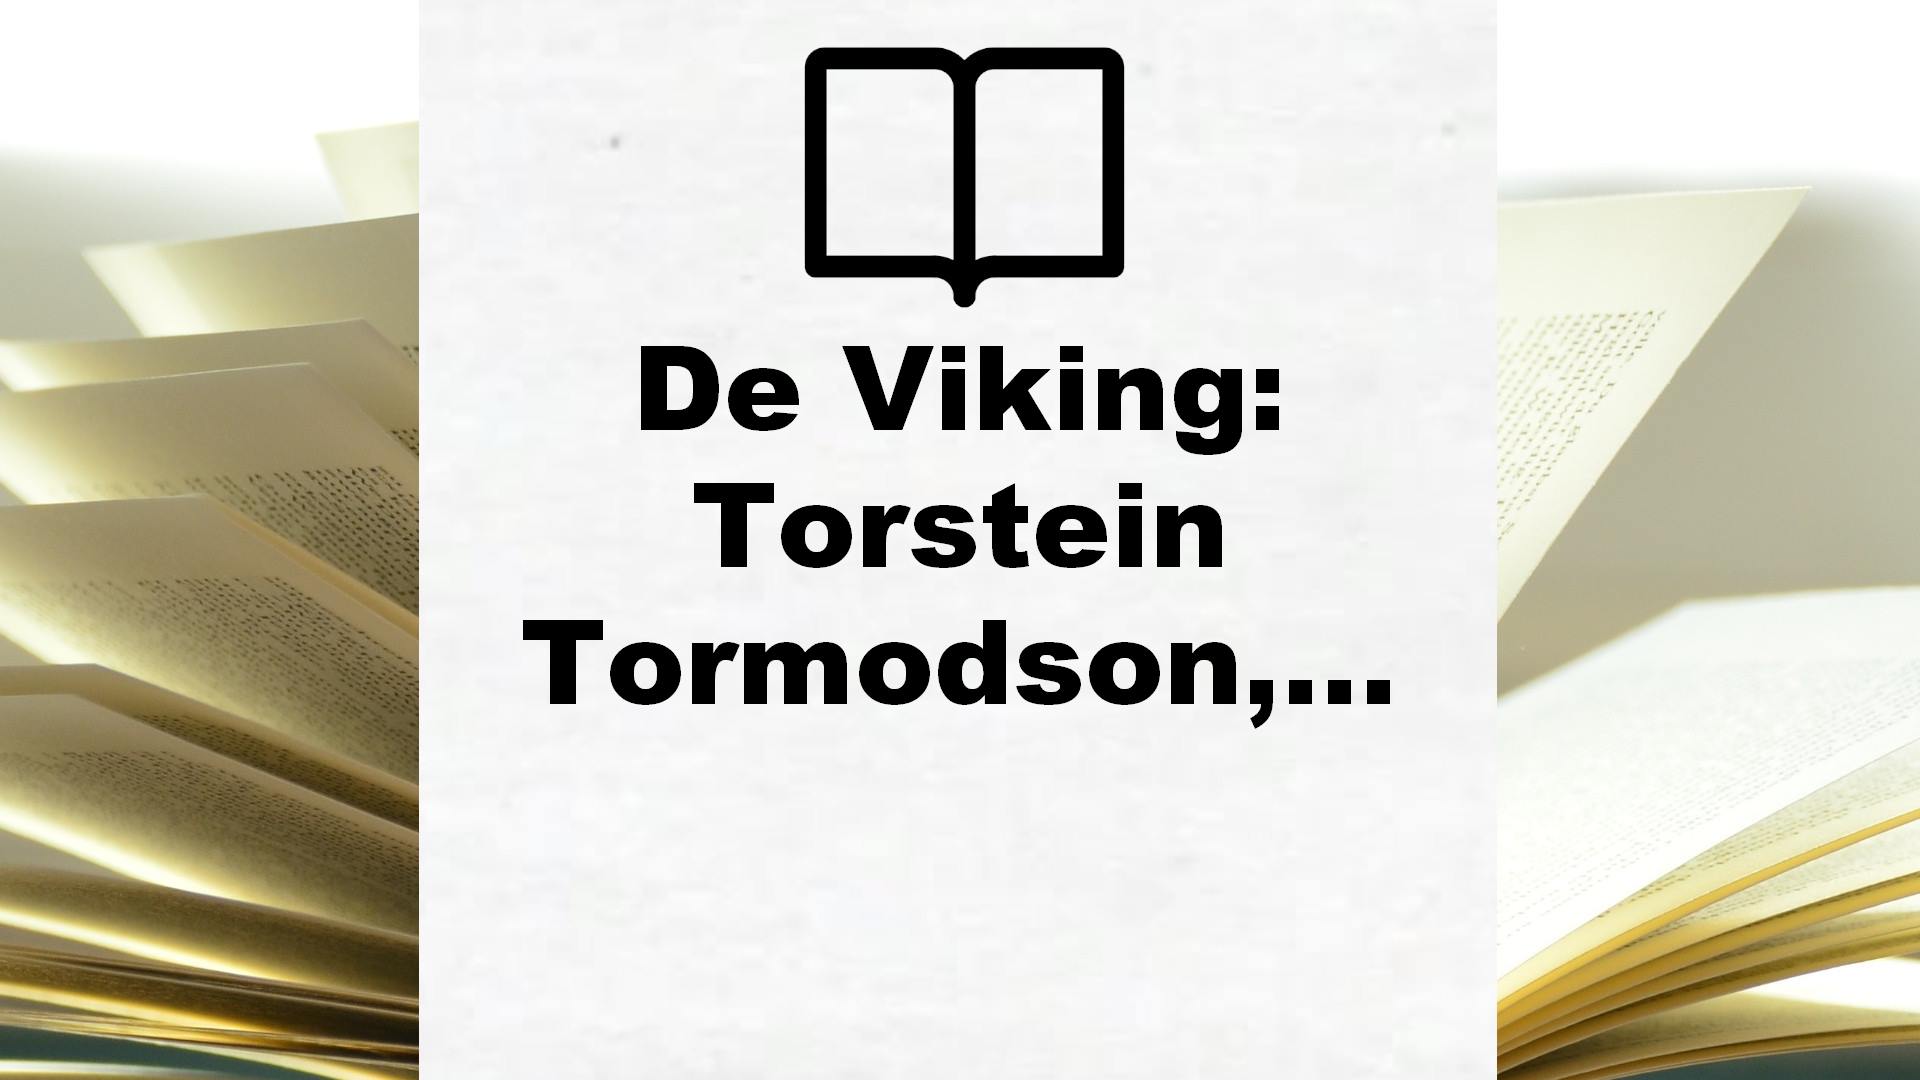 De Viking: Torstein Tormodson, krijger en huurling, raakt betrokken bij een gruwelijke machtsstrijd – Boekrecensie